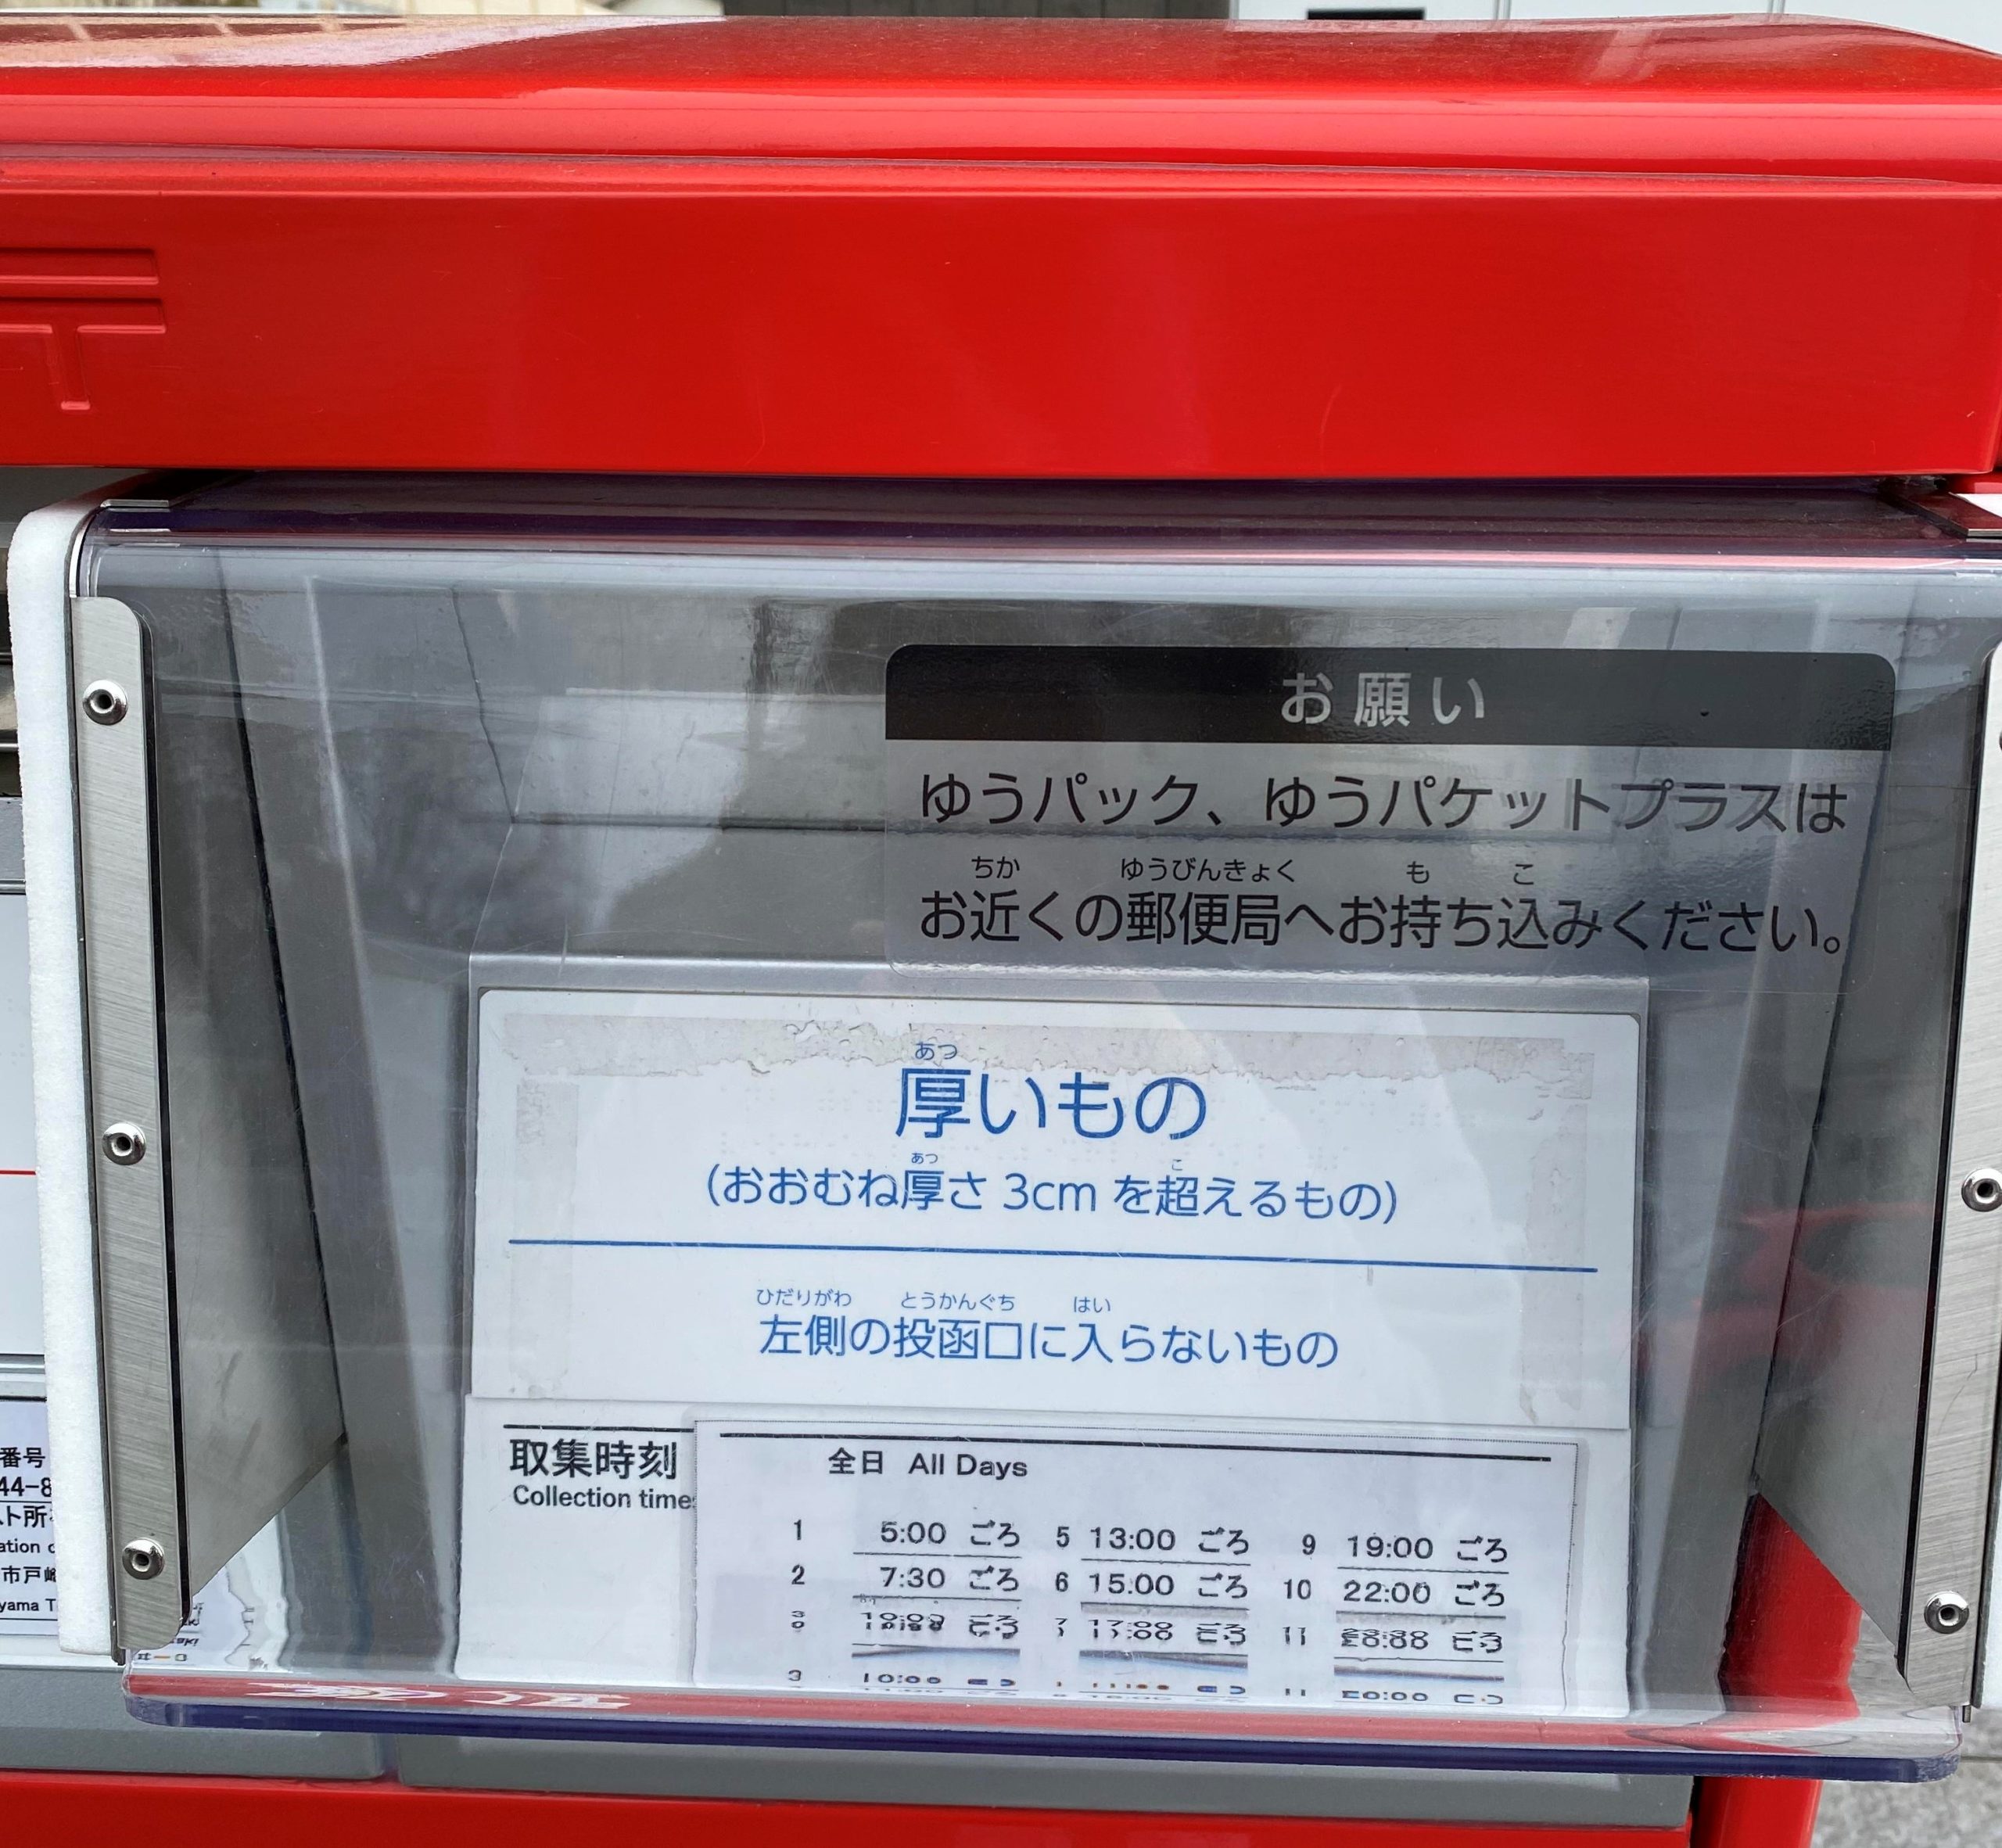 岡崎郵便局の新型7cm厚対応郵便ポスト(7cm厚対応投函口アップ)